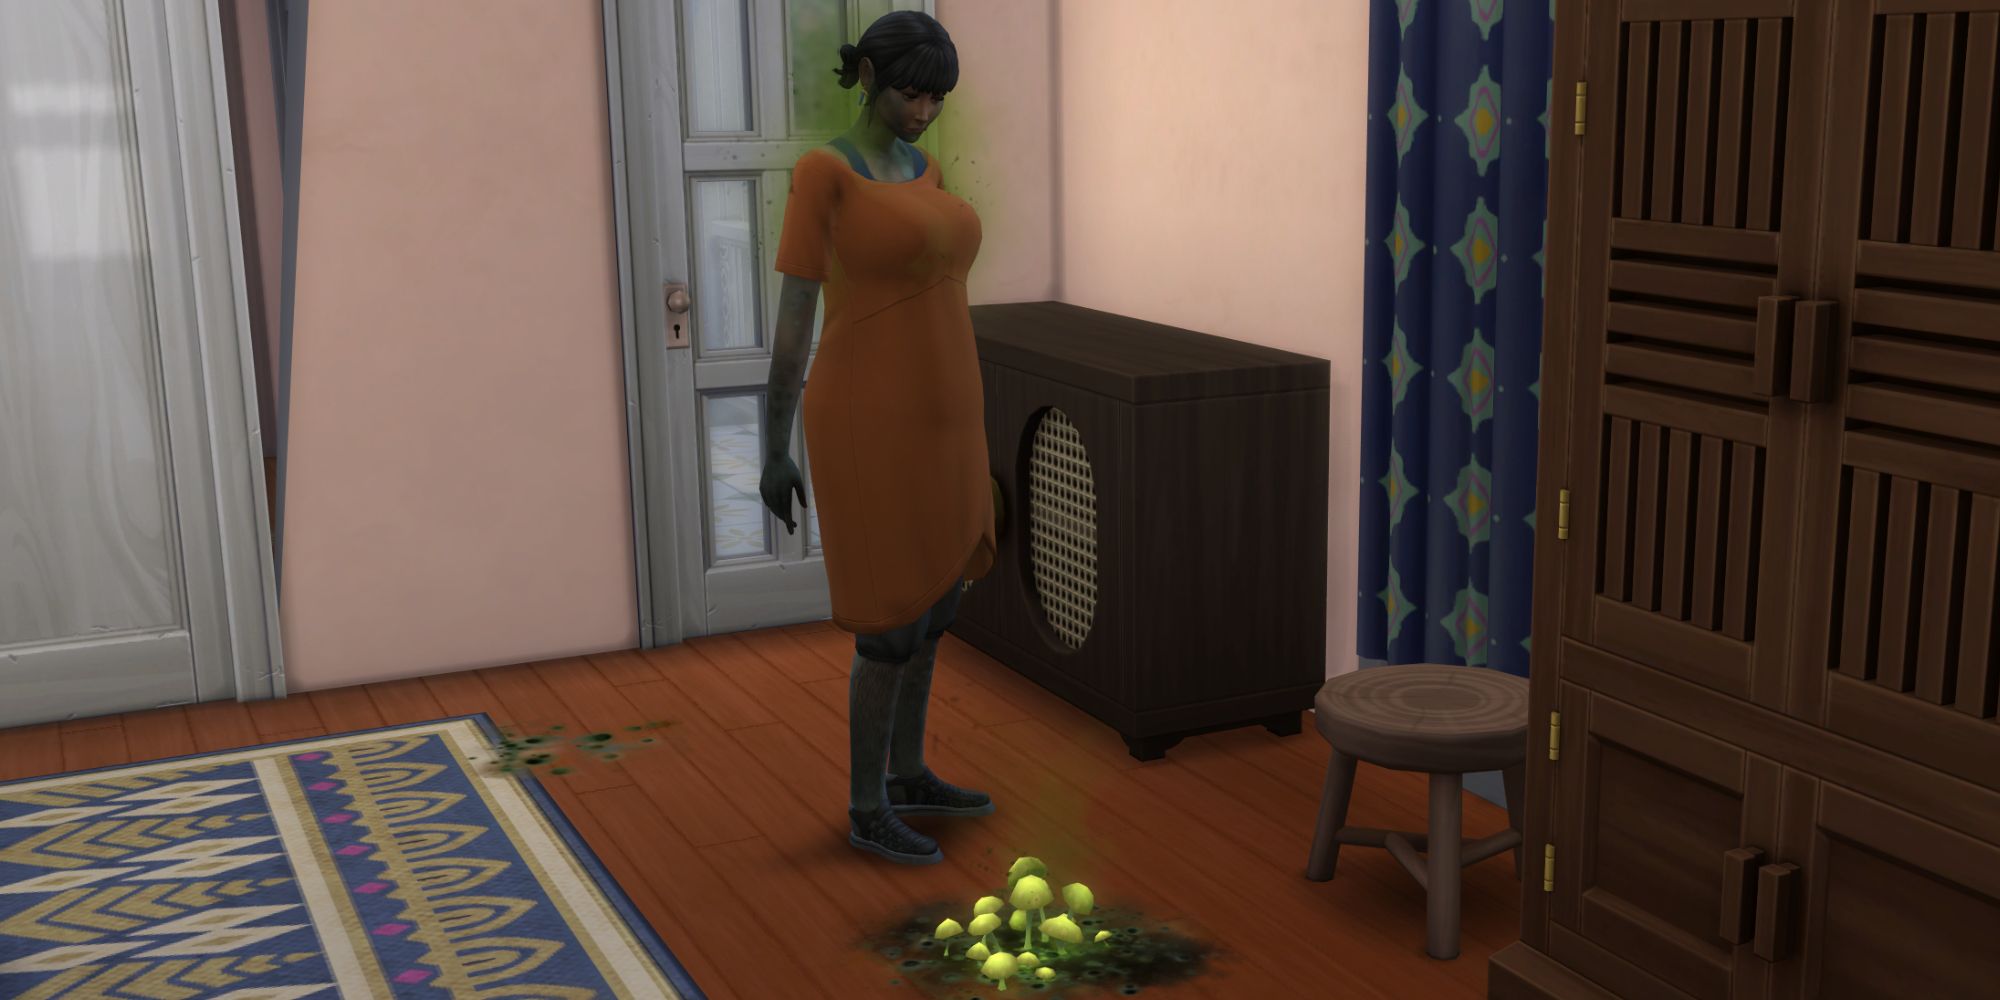 Вы сейчас просматриваете The Sims 4: В аренду — Как избавиться от плесени